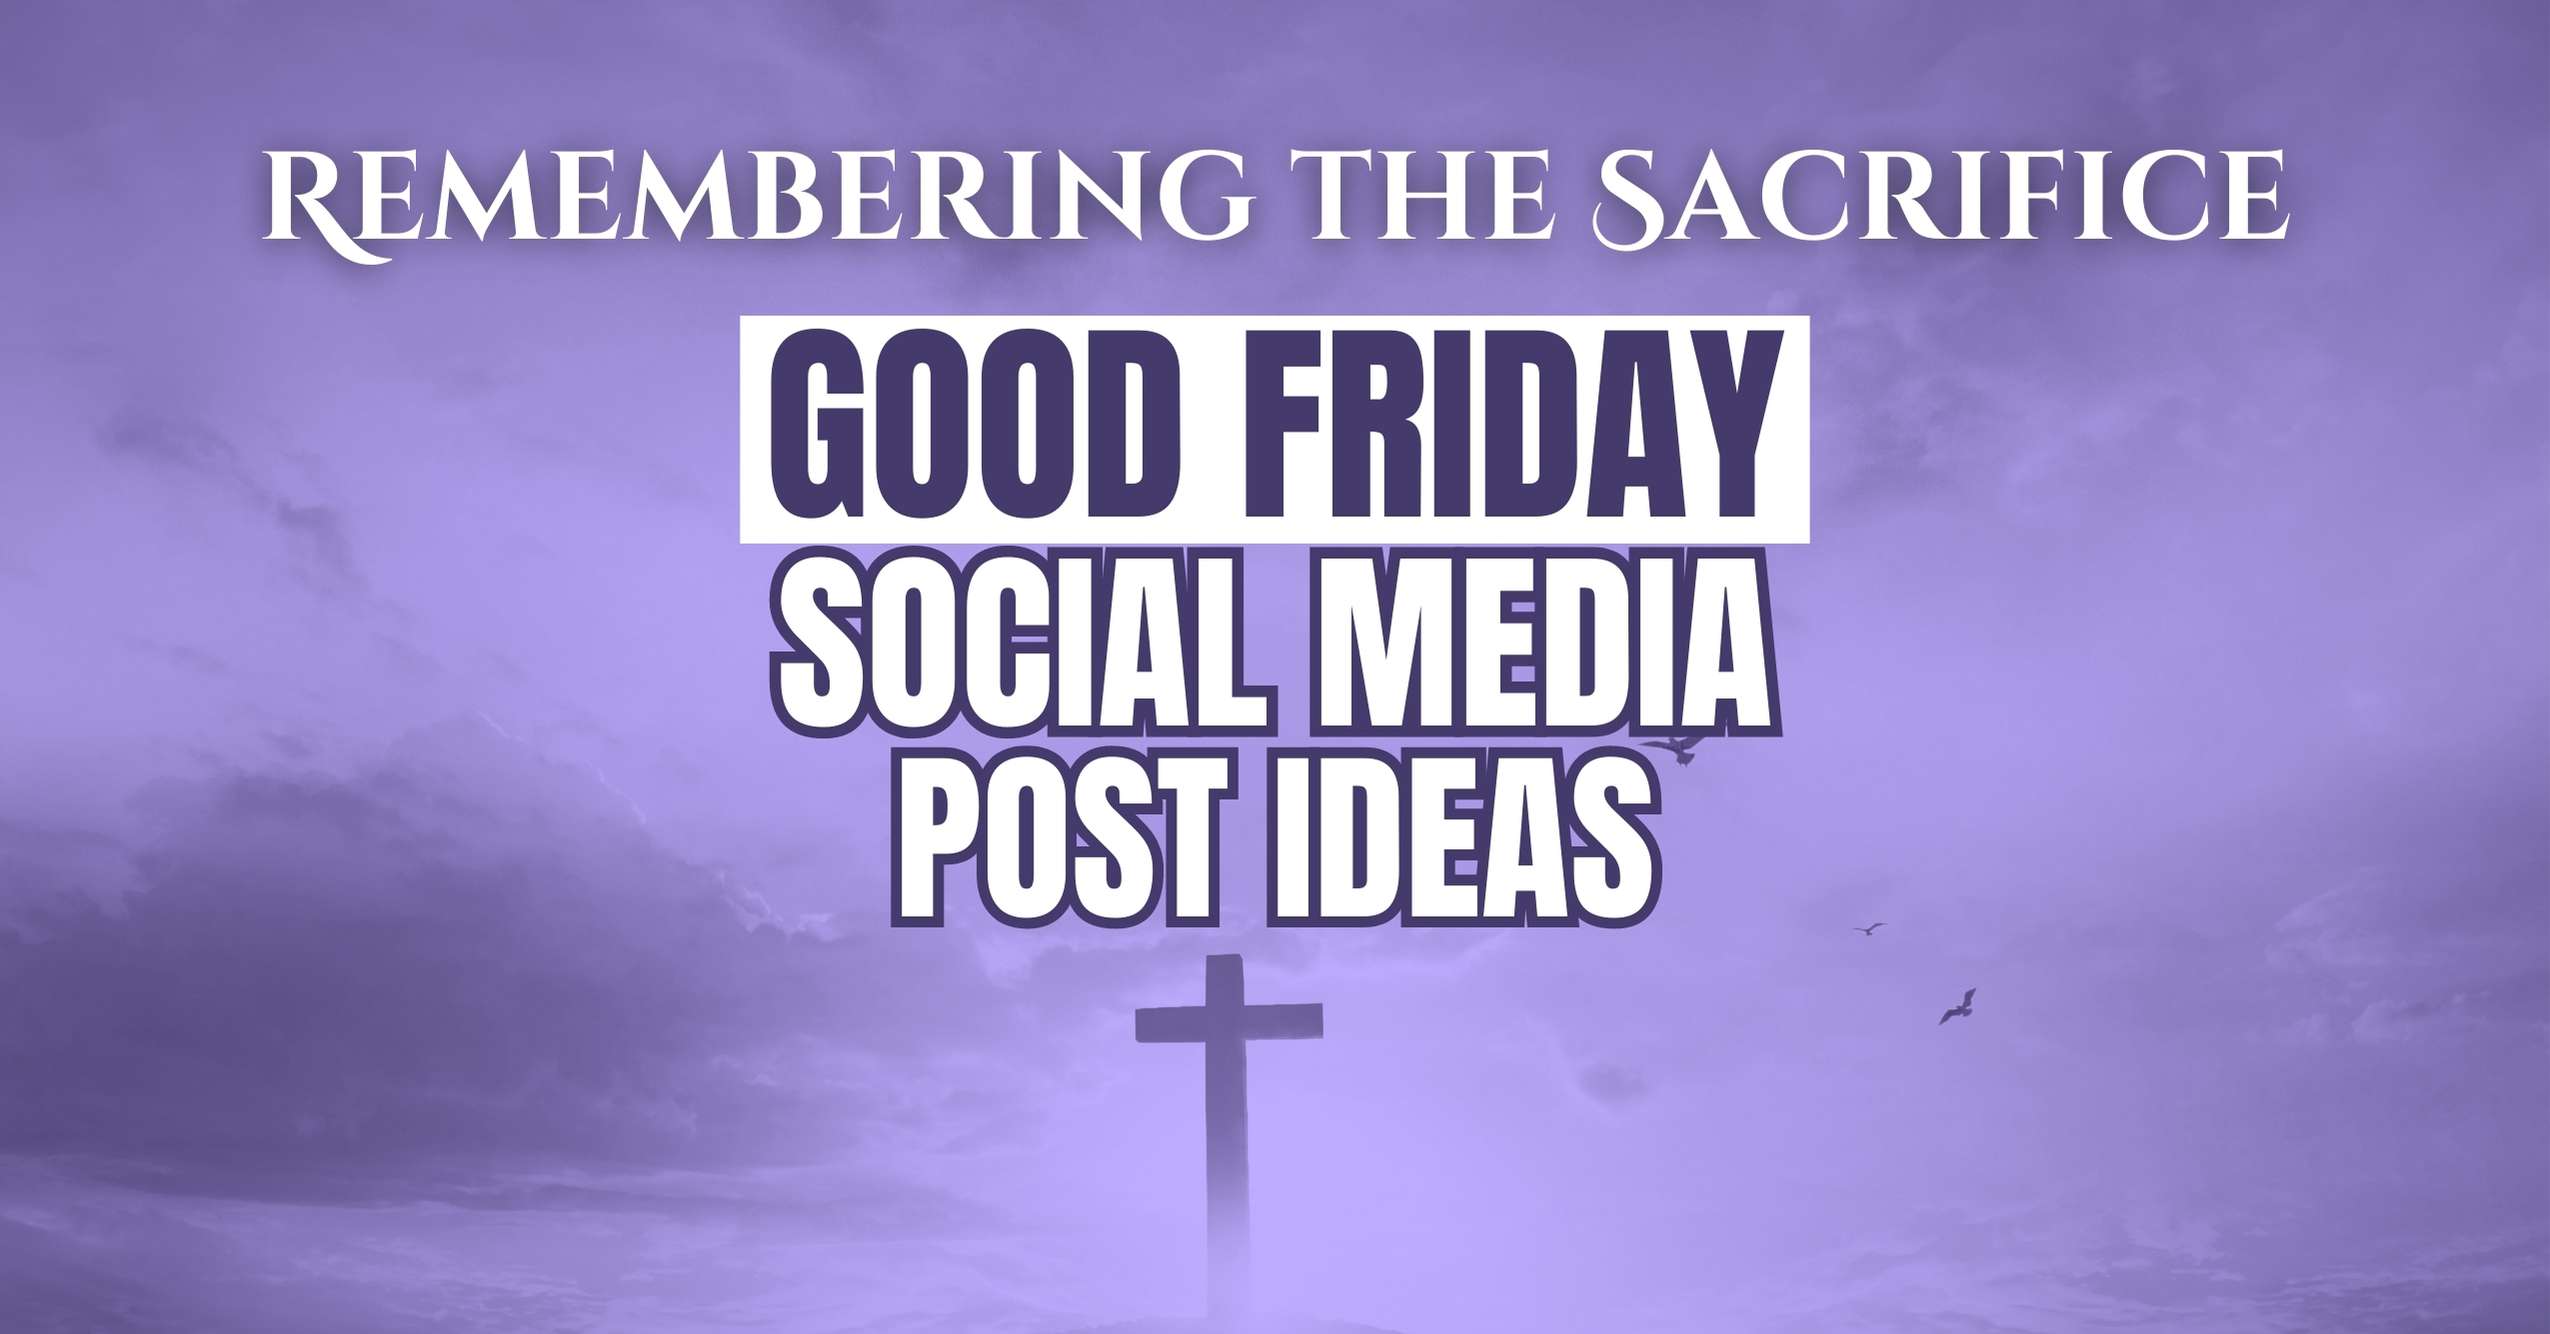 Good Friday Social Media Post Ideas (Good Friday Social Media Posts)